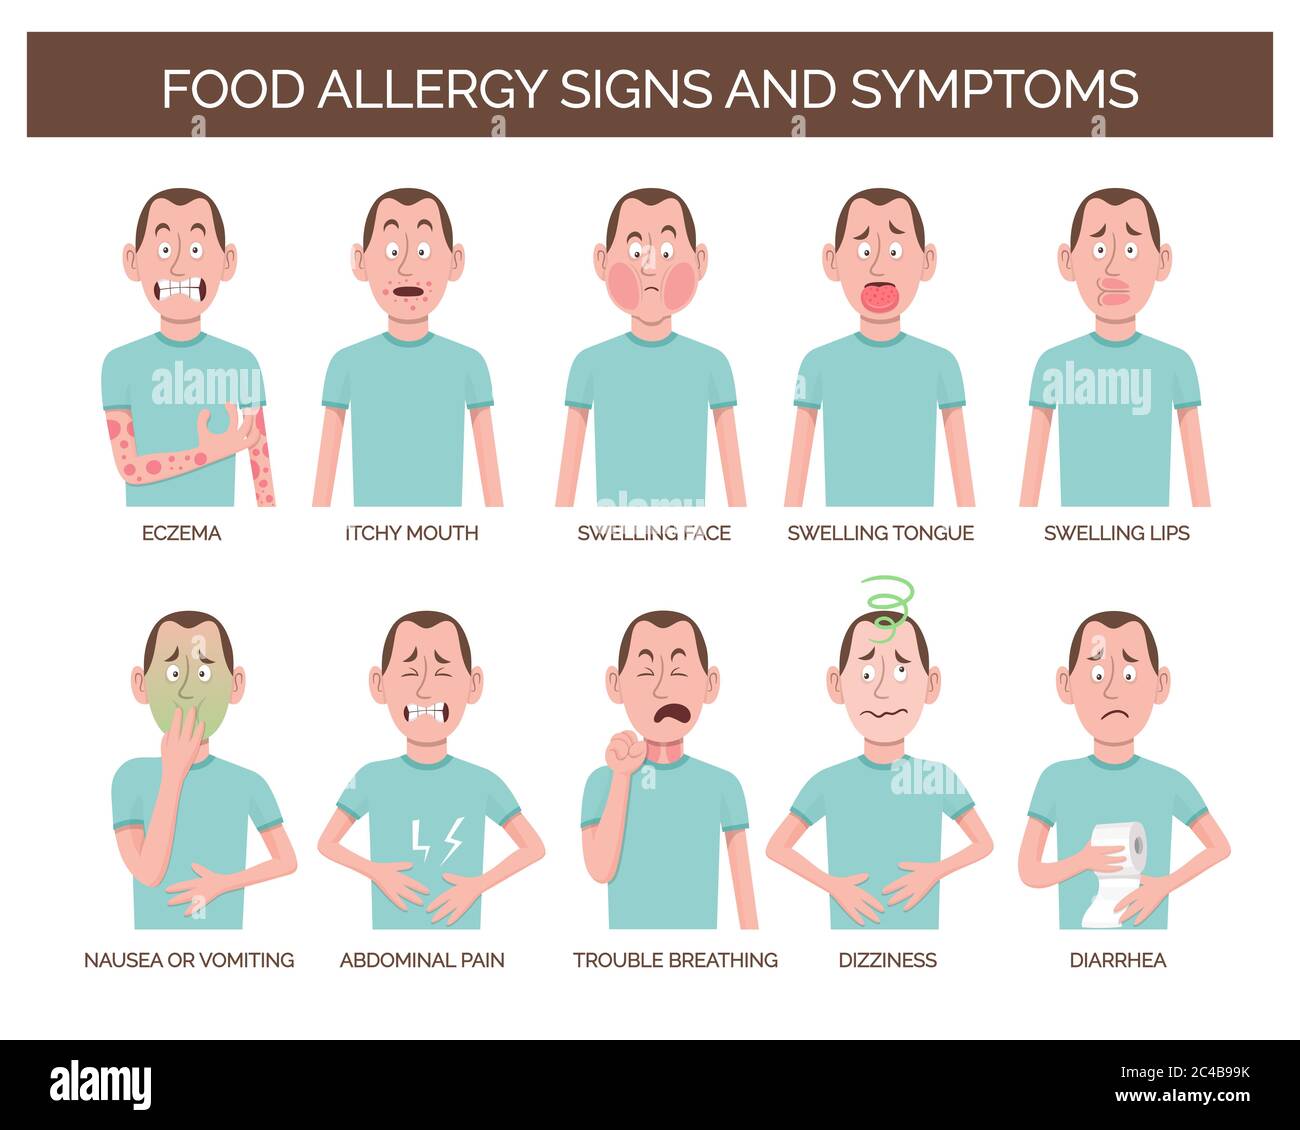 Personnage de dessin animé montrant les signes et symptômes les plus courants d'allergie alimentaire. Eczéma, douleurs abdominales, étourdissements, vomissements et diarrhée. Illustration vectorielle Illustration de Vecteur